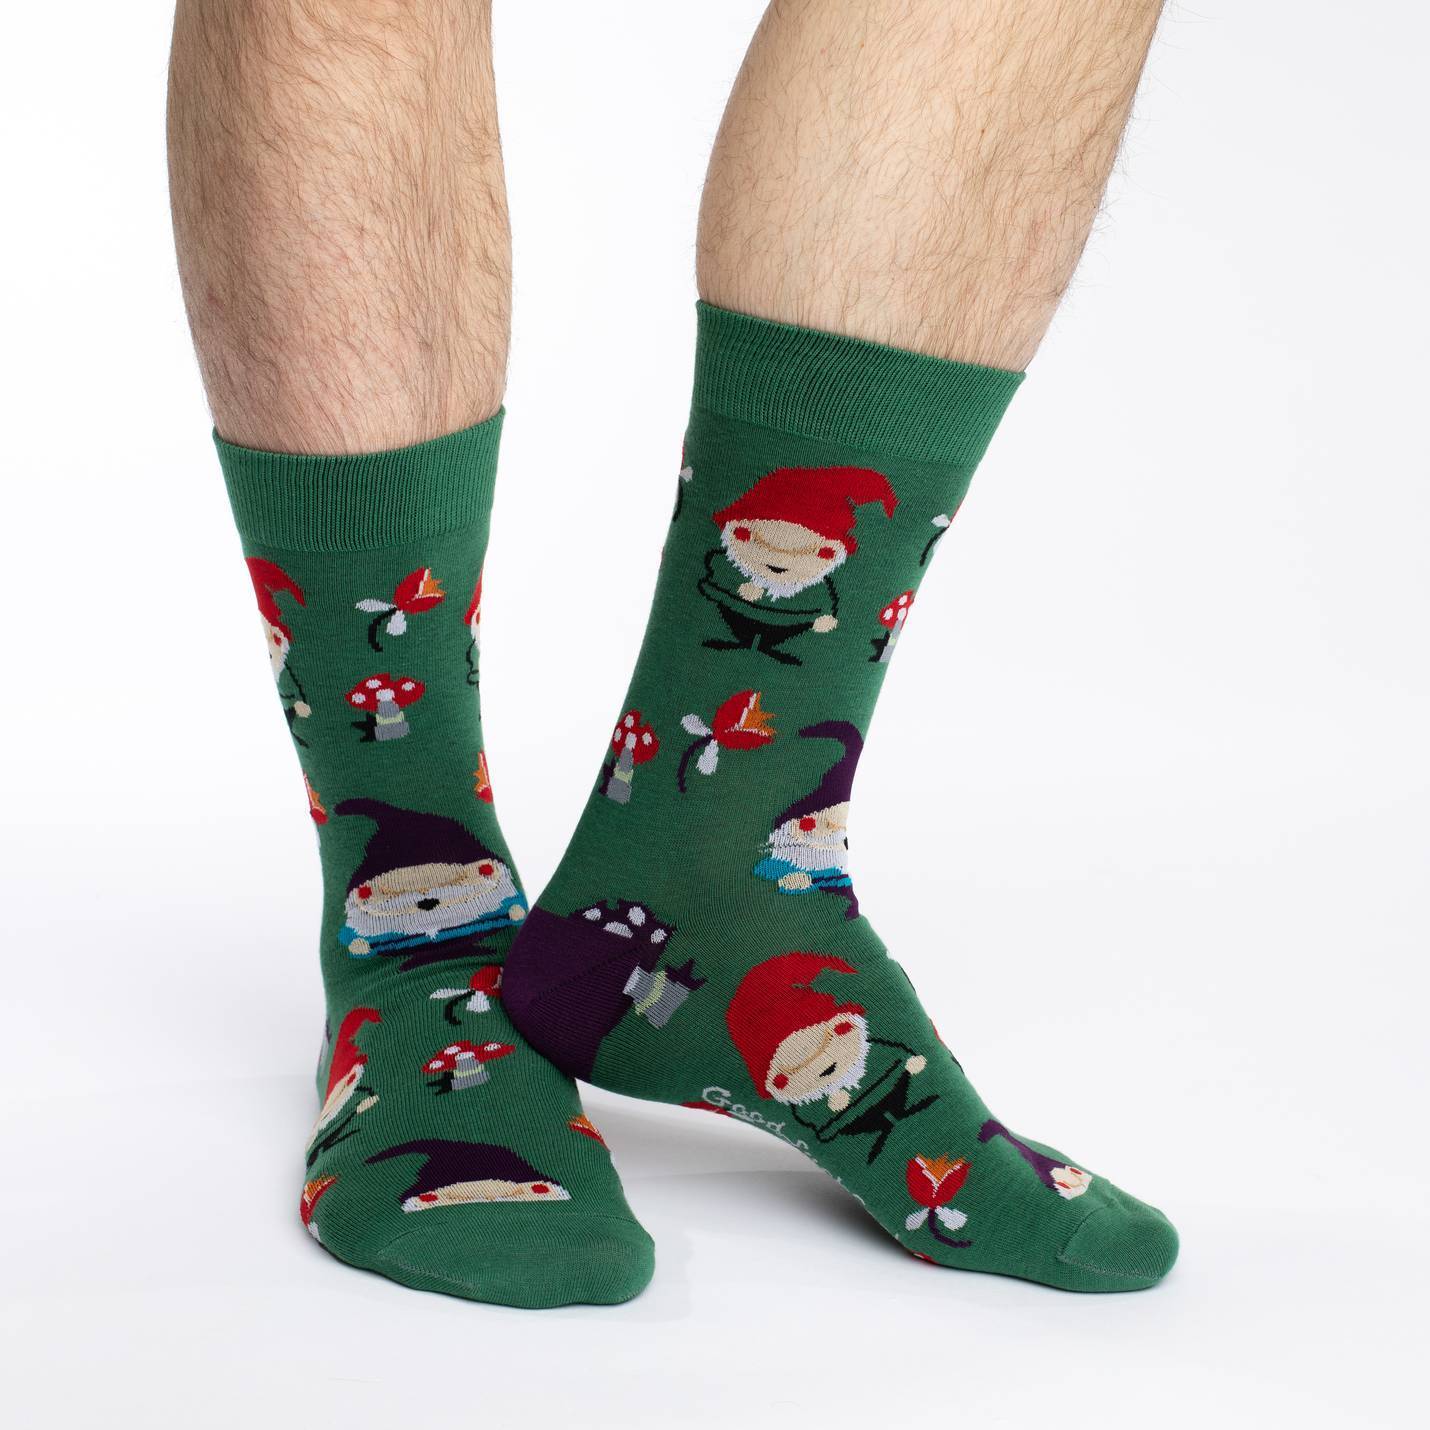 Men's Lawn Gnomes Socks – Good Luck Sock